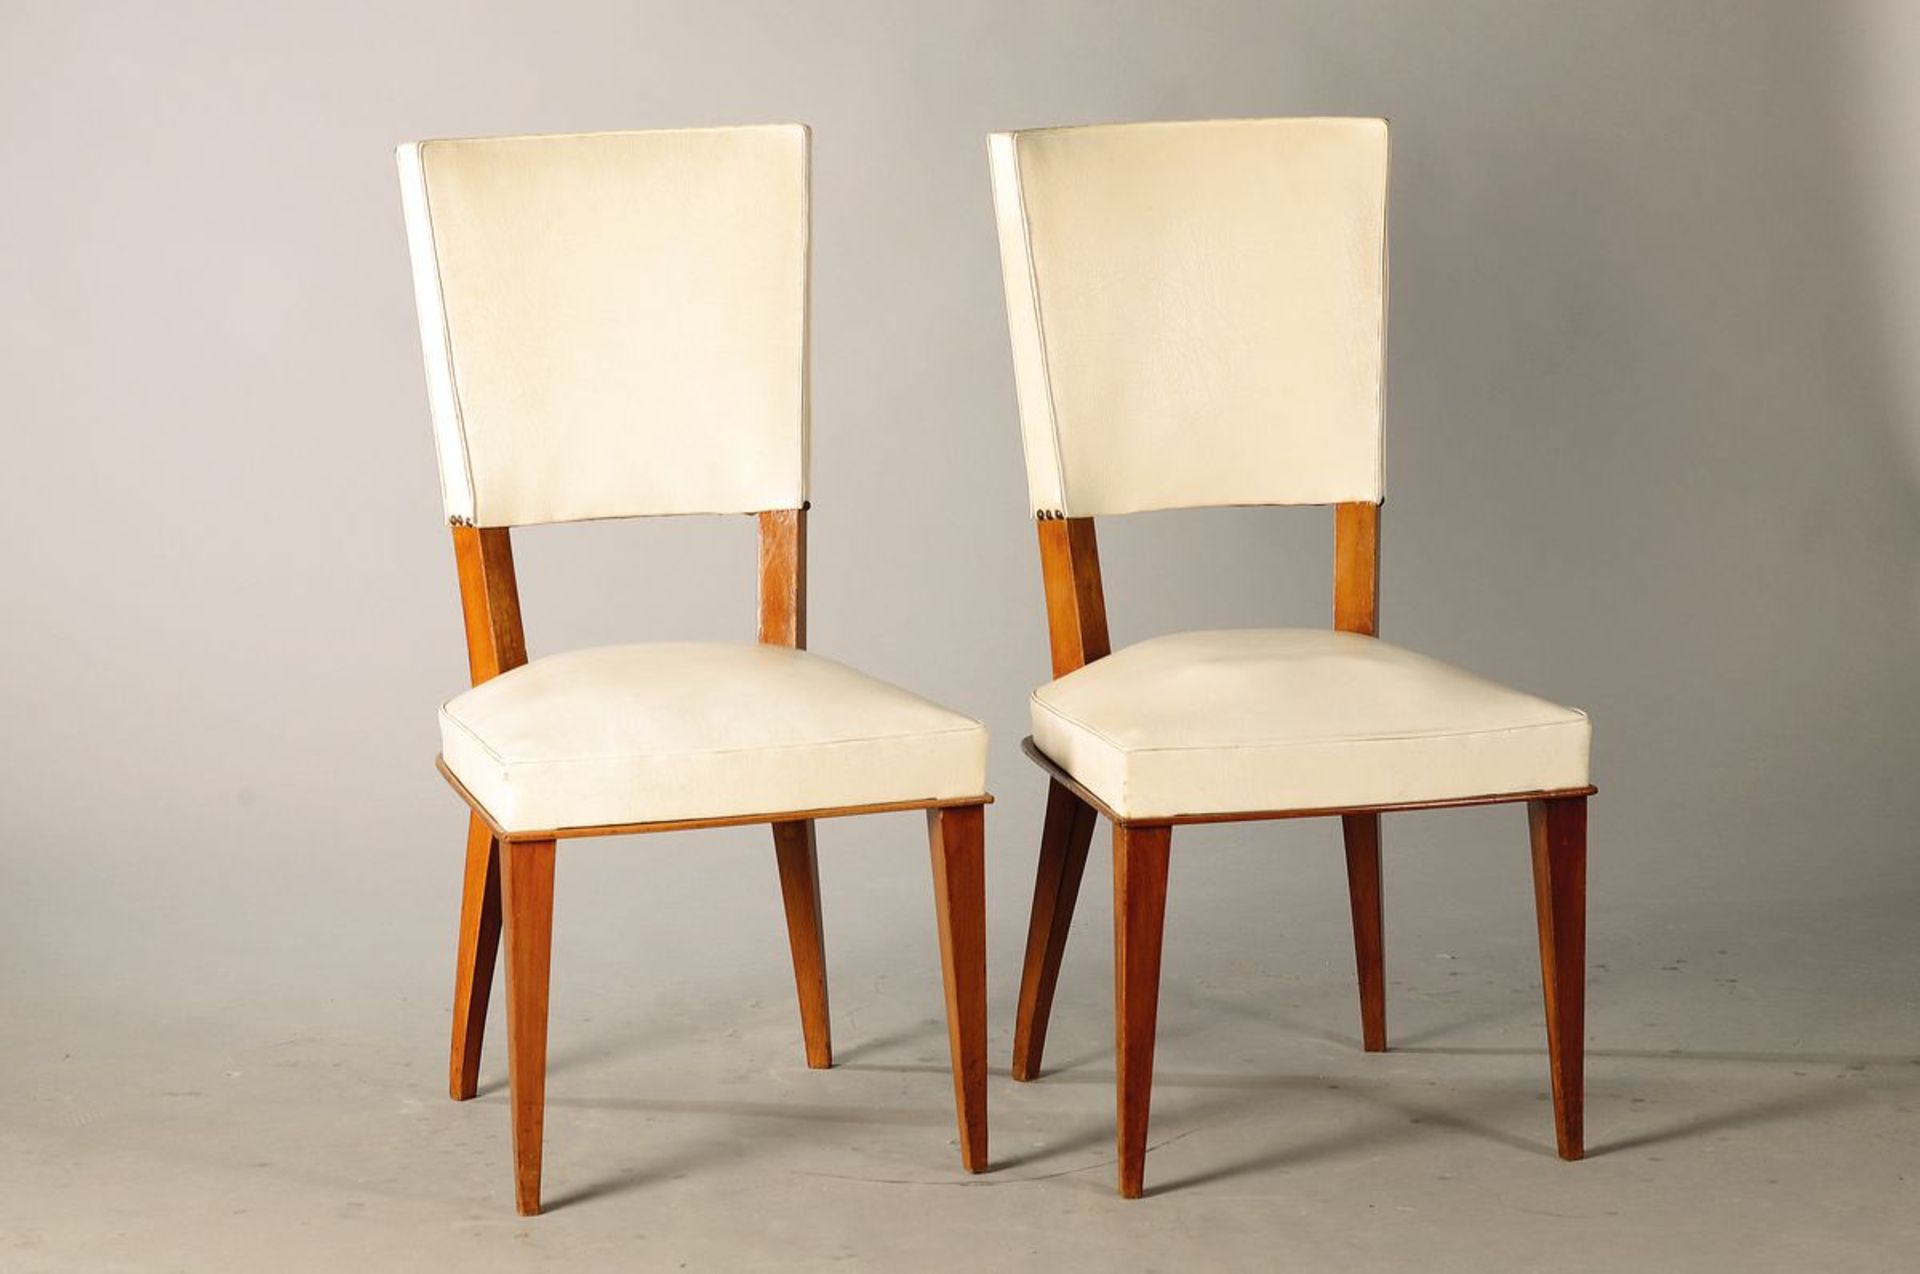 8 Stühle, Frankreich, 1940er Jahre, 8 elegante Stühle,